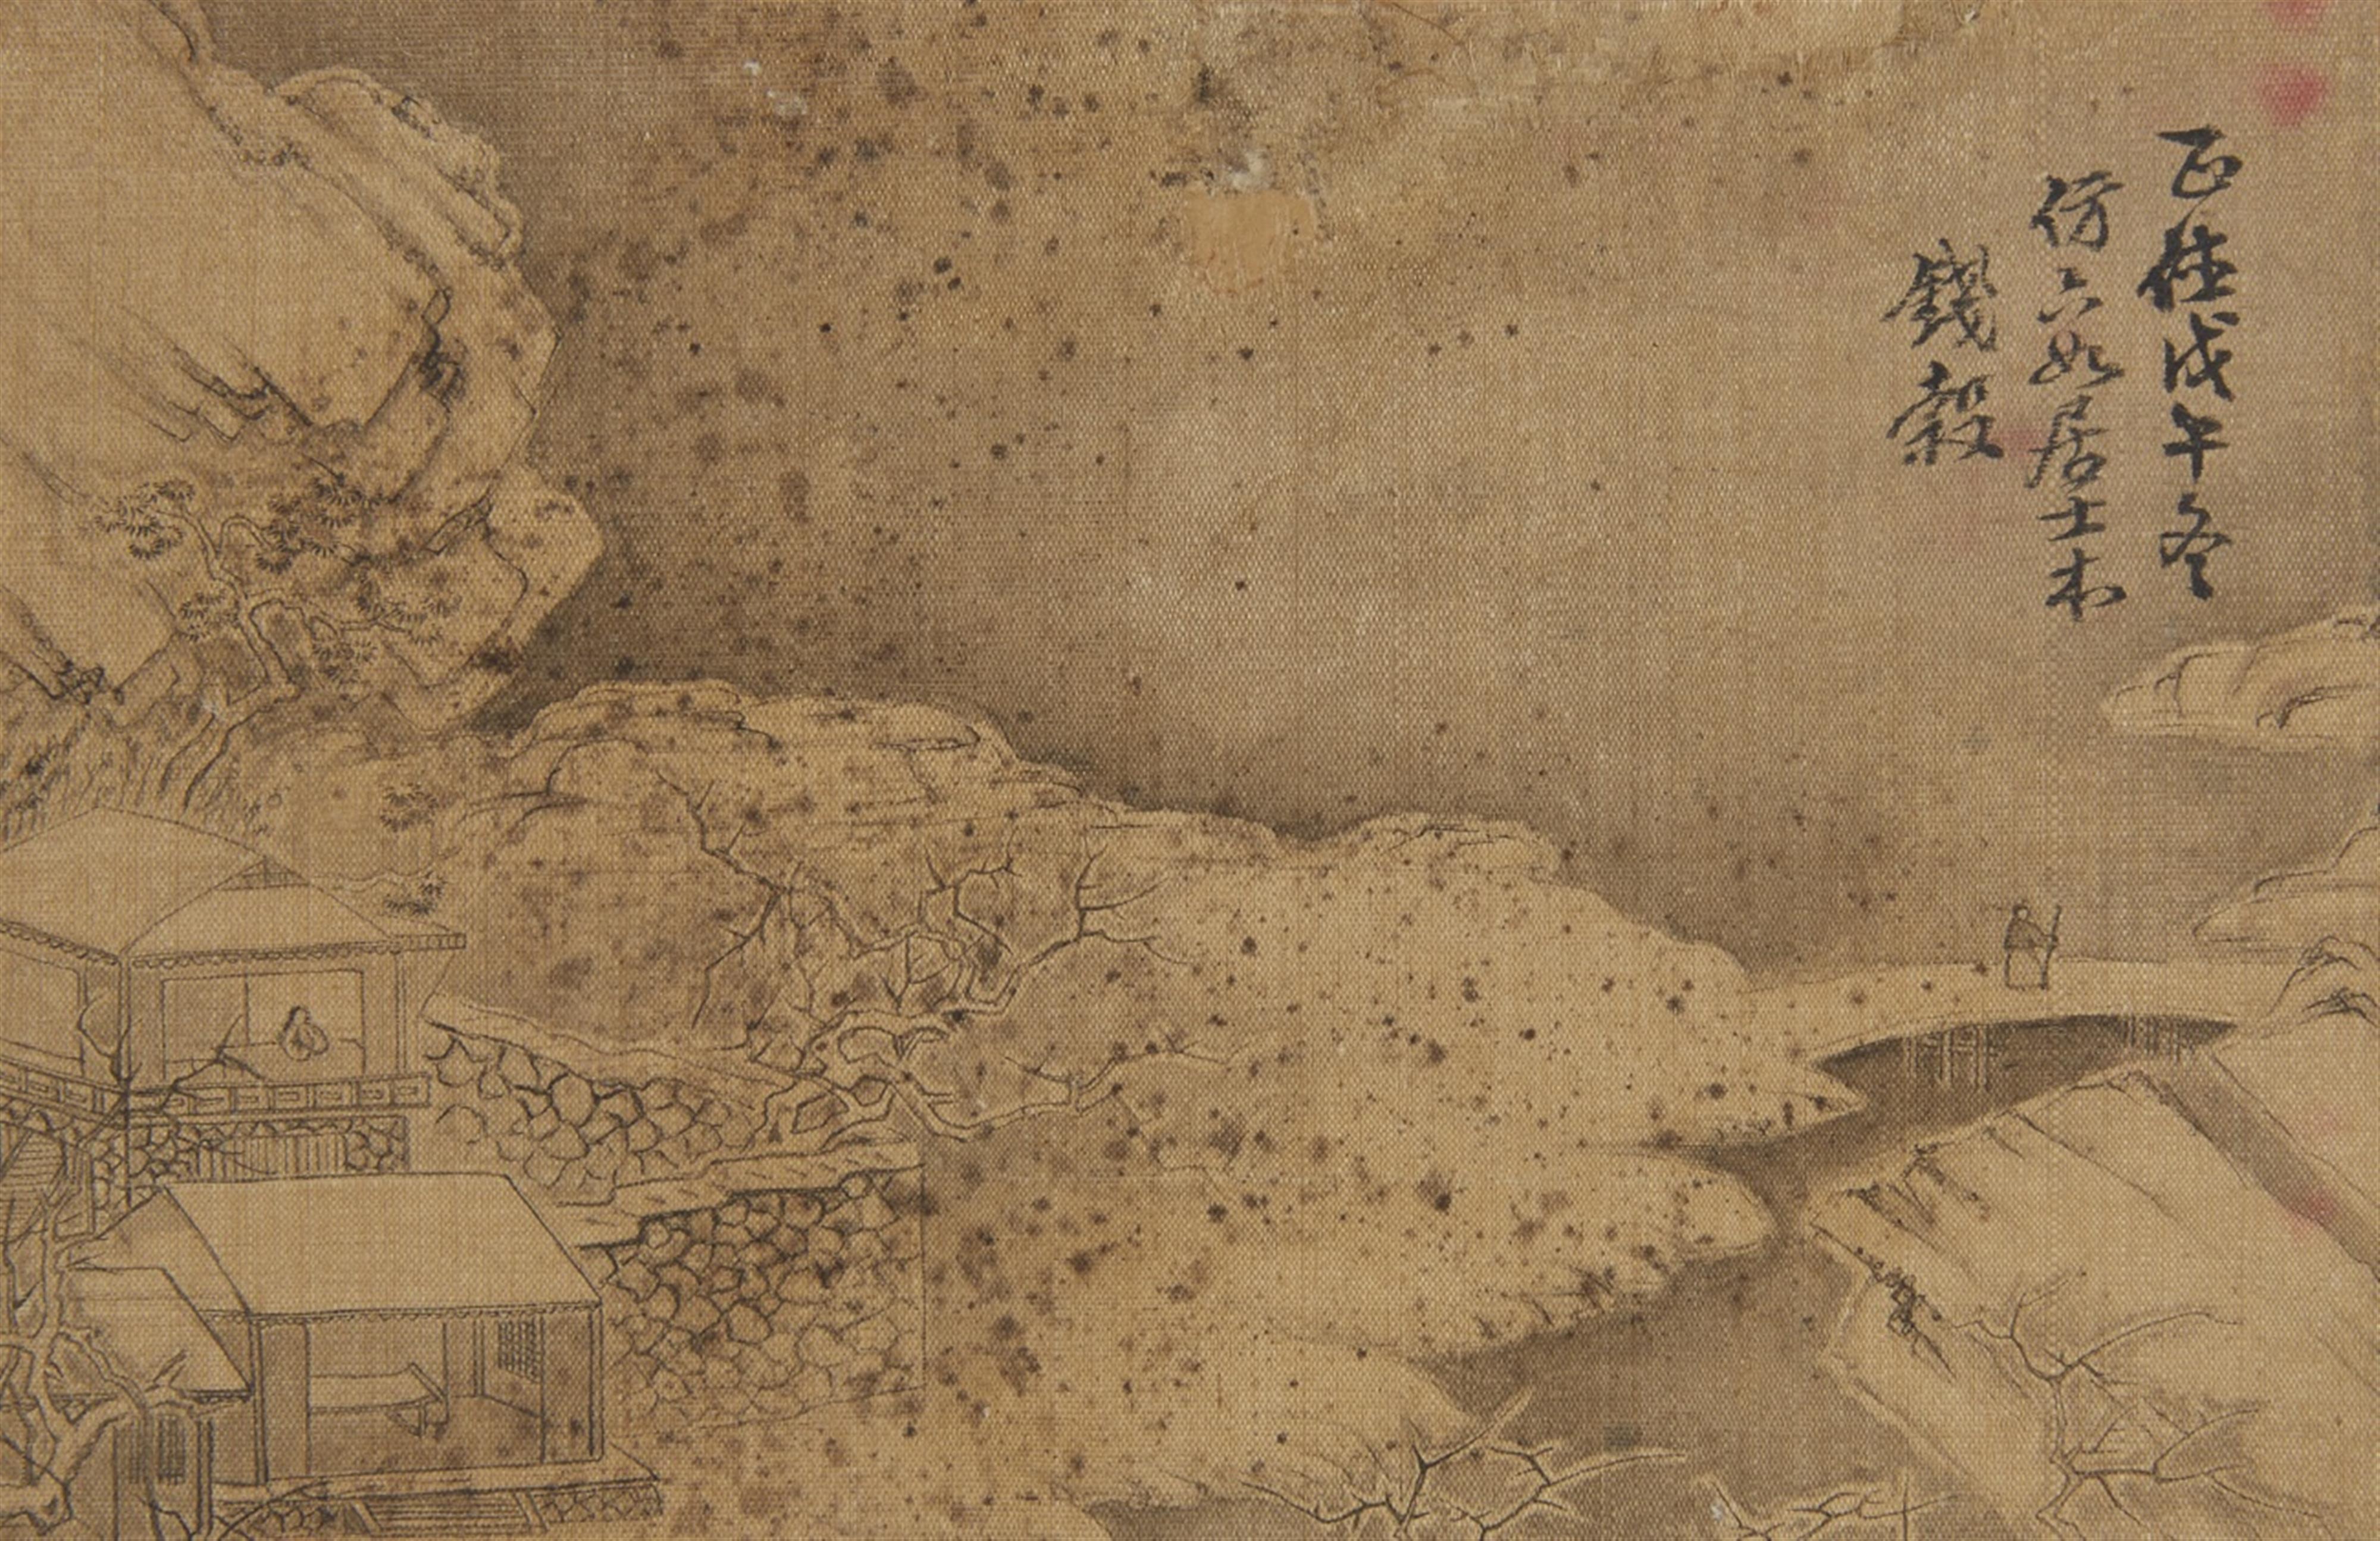 Qian Gu, in der Art - Album mit dem Titel "Ming Qian Gu shanshui ce", bestehend aus sechs losen Doppelseiten mit Landschaftdarstellungen im Stil des Qian Gu (1508-1578). Wasserschäden. Stoff bespannt... - image-7